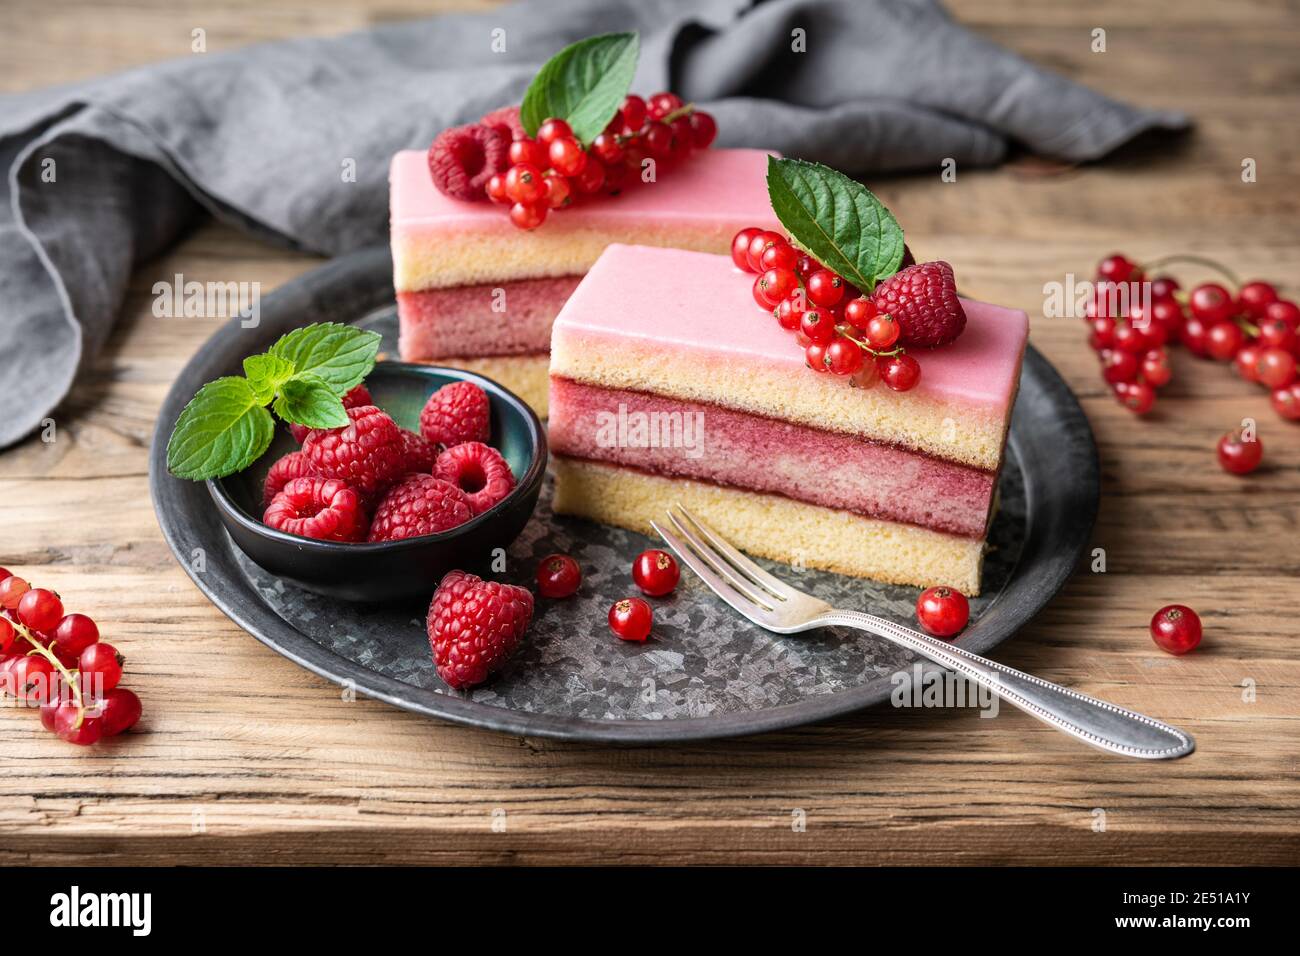 Köstliche und erfrischende saftige Dessert, Punch Cake mit Zuckerzuckerguss und frischen Himbeeren und roten Johannisbeeren auf Holz Hintergrund gekrönt Stockfoto